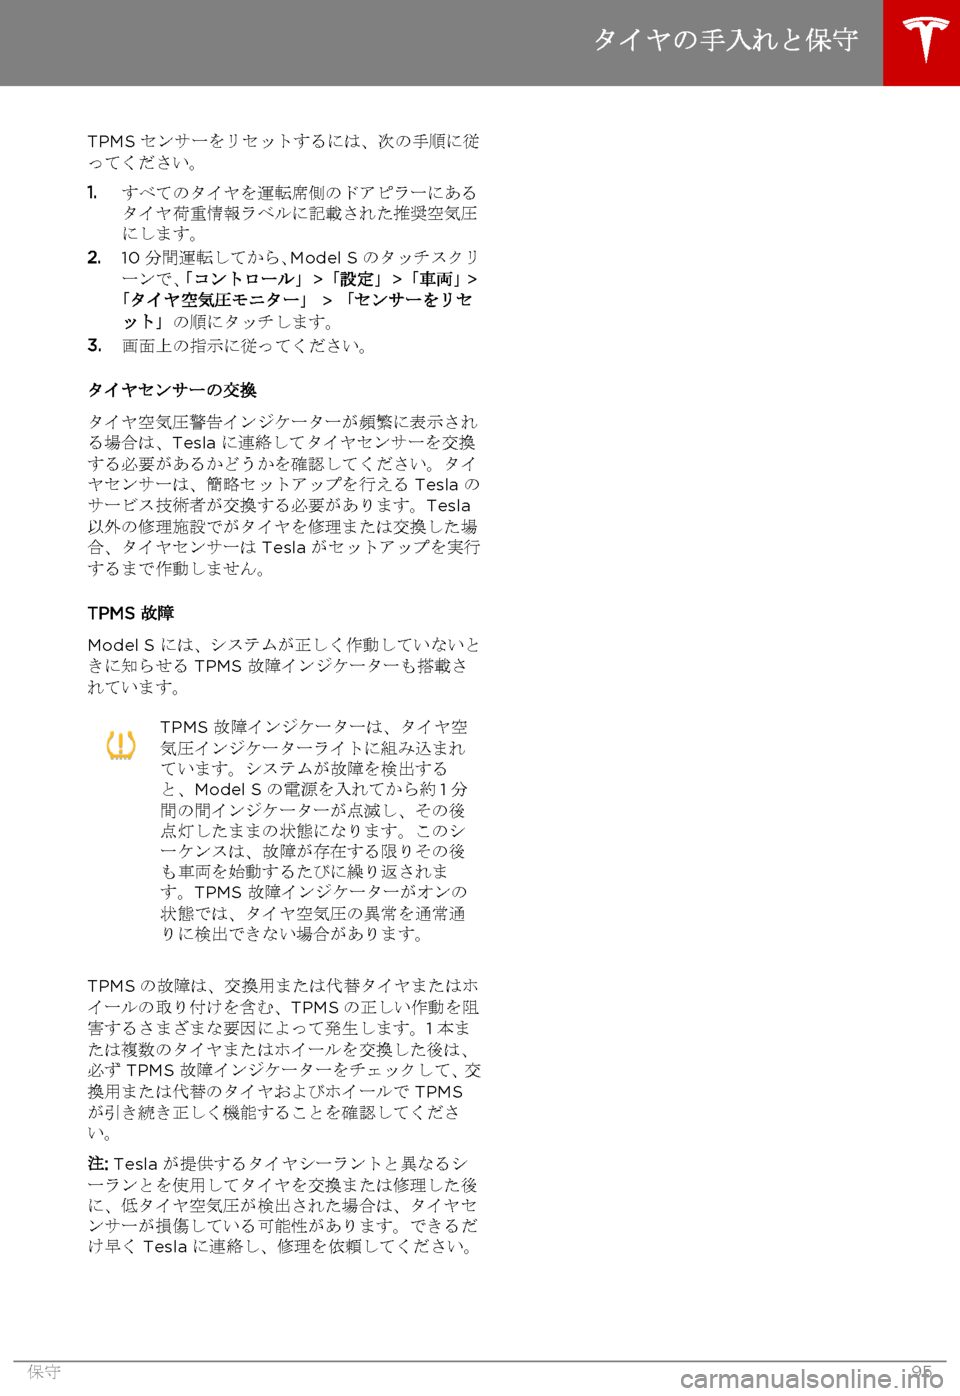 TESLA MODEL S 2015  取扱説明書 (in Japanese)  TPMS センサーをリセットするには、次の手順に従ってください。
1.すべてのタイヤを運転席側のドアピラーにあるタイヤ荷重情報ラベルに記載された